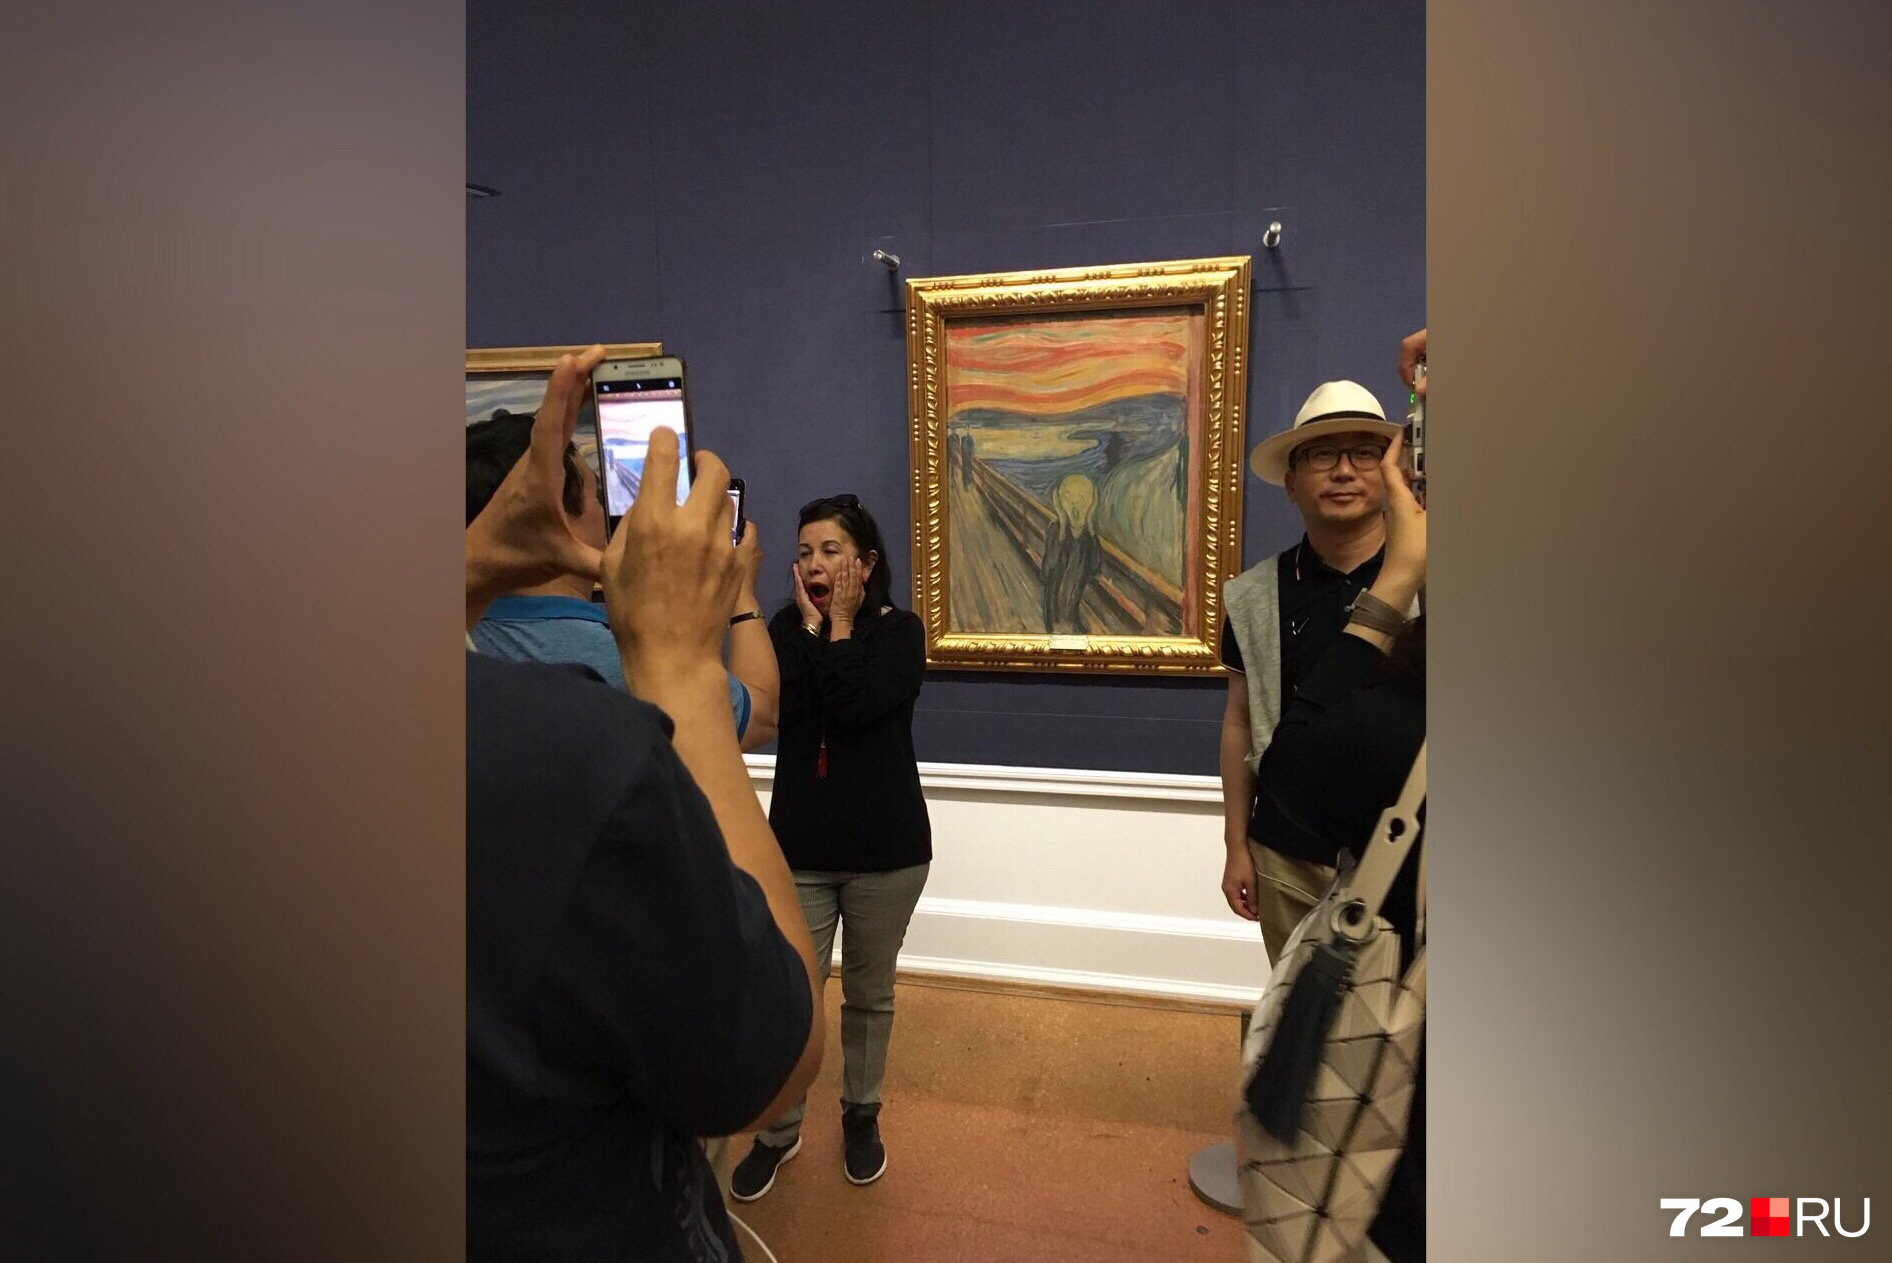 Немного мешали любоваться шедеврами китайские туристы, стремившиеся сфотографироваться на фоне каждой картины или как минимум сделать селфи